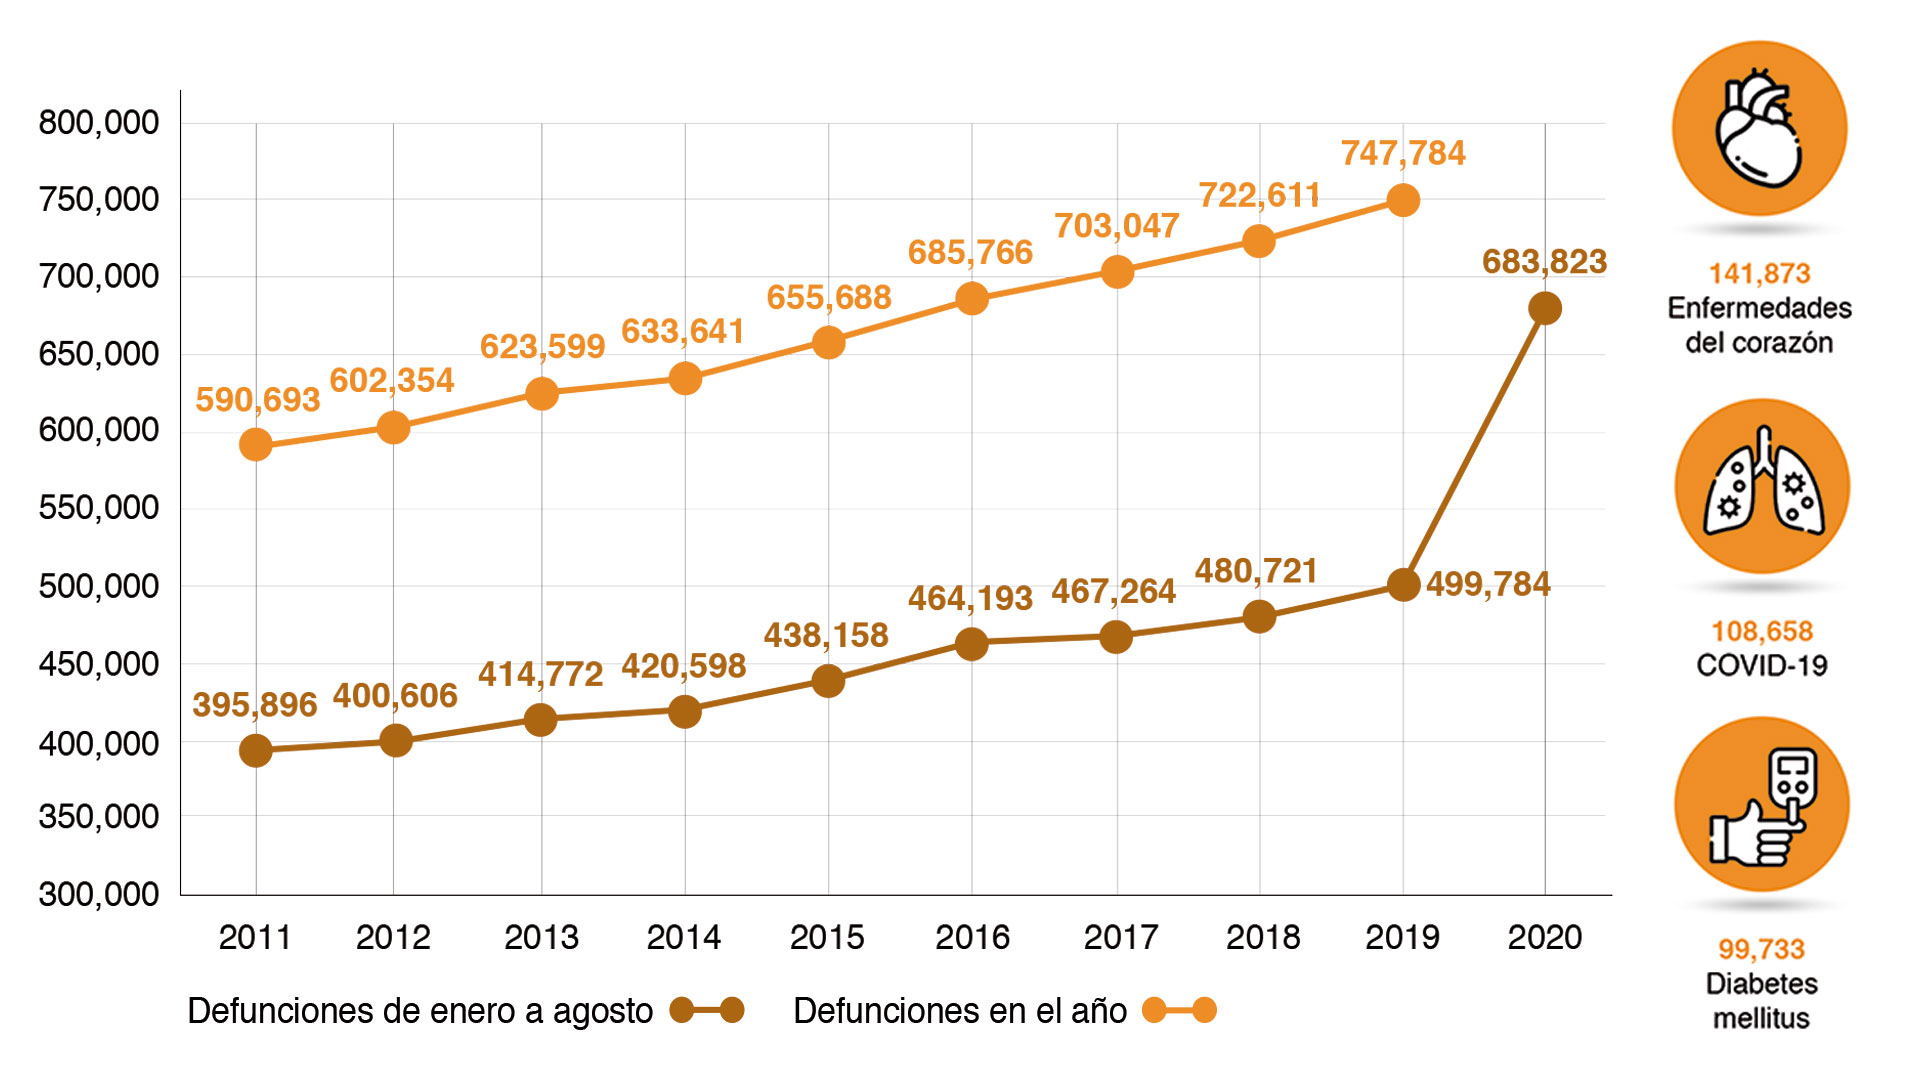 COVID-19 es la segunda causa de muerte en México: entre enero y agosto de  2020 cobró la vida de 108,658 personas - Infobae